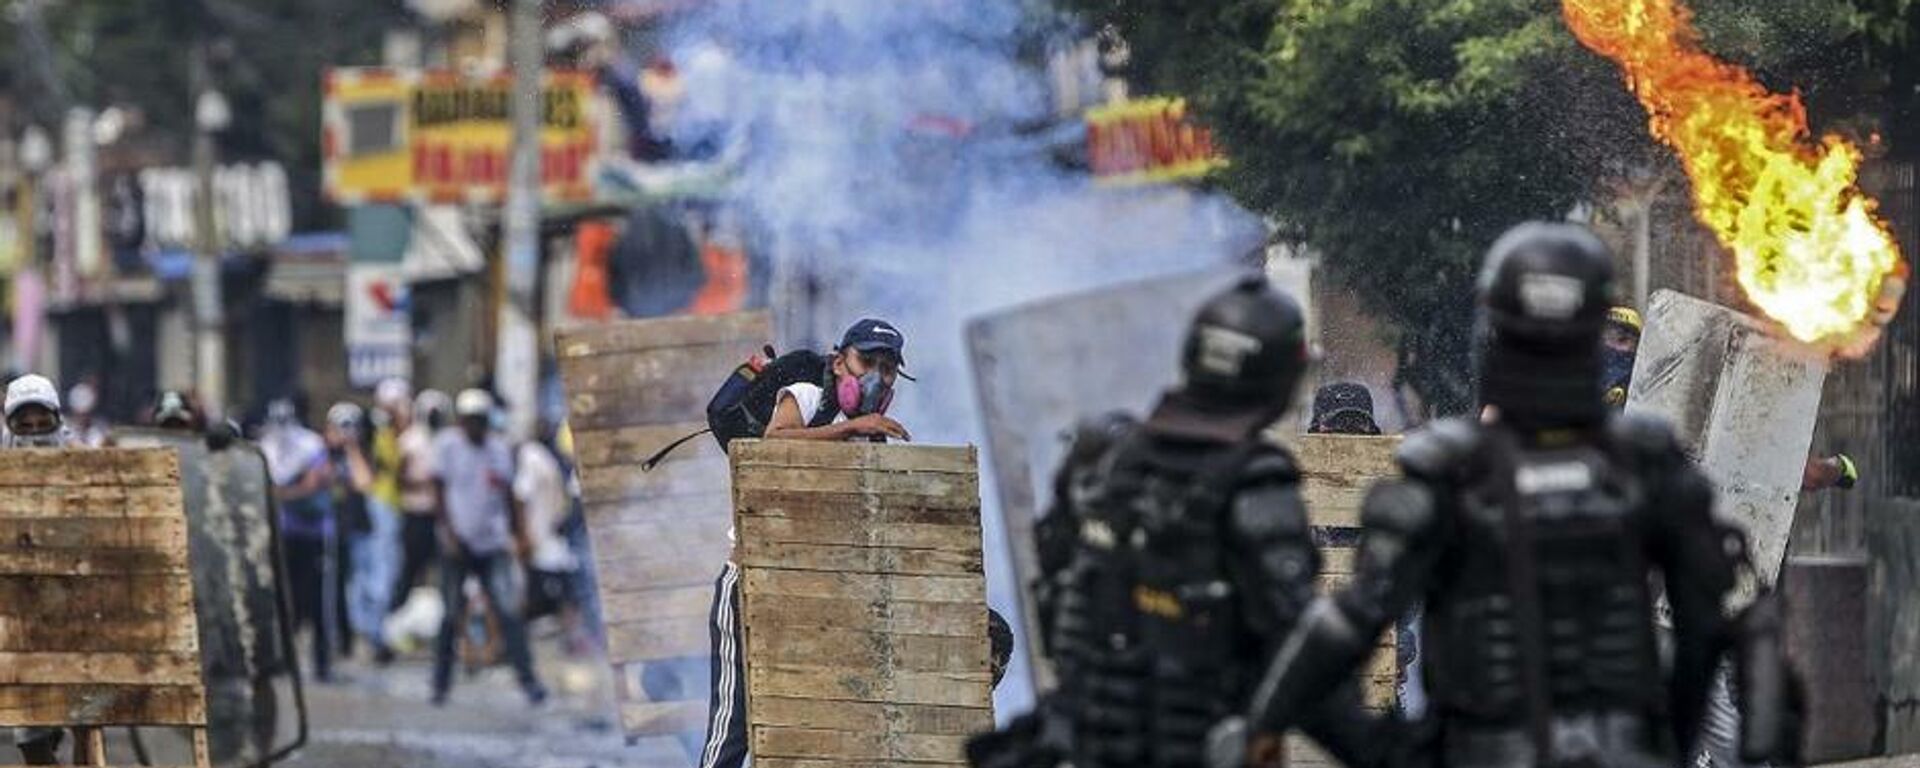 Disturbios contra la reforma tributaria en Cali (Colombia), el 29 de abril del 2021 - Sputnik Mundo, 1920, 30.04.2021